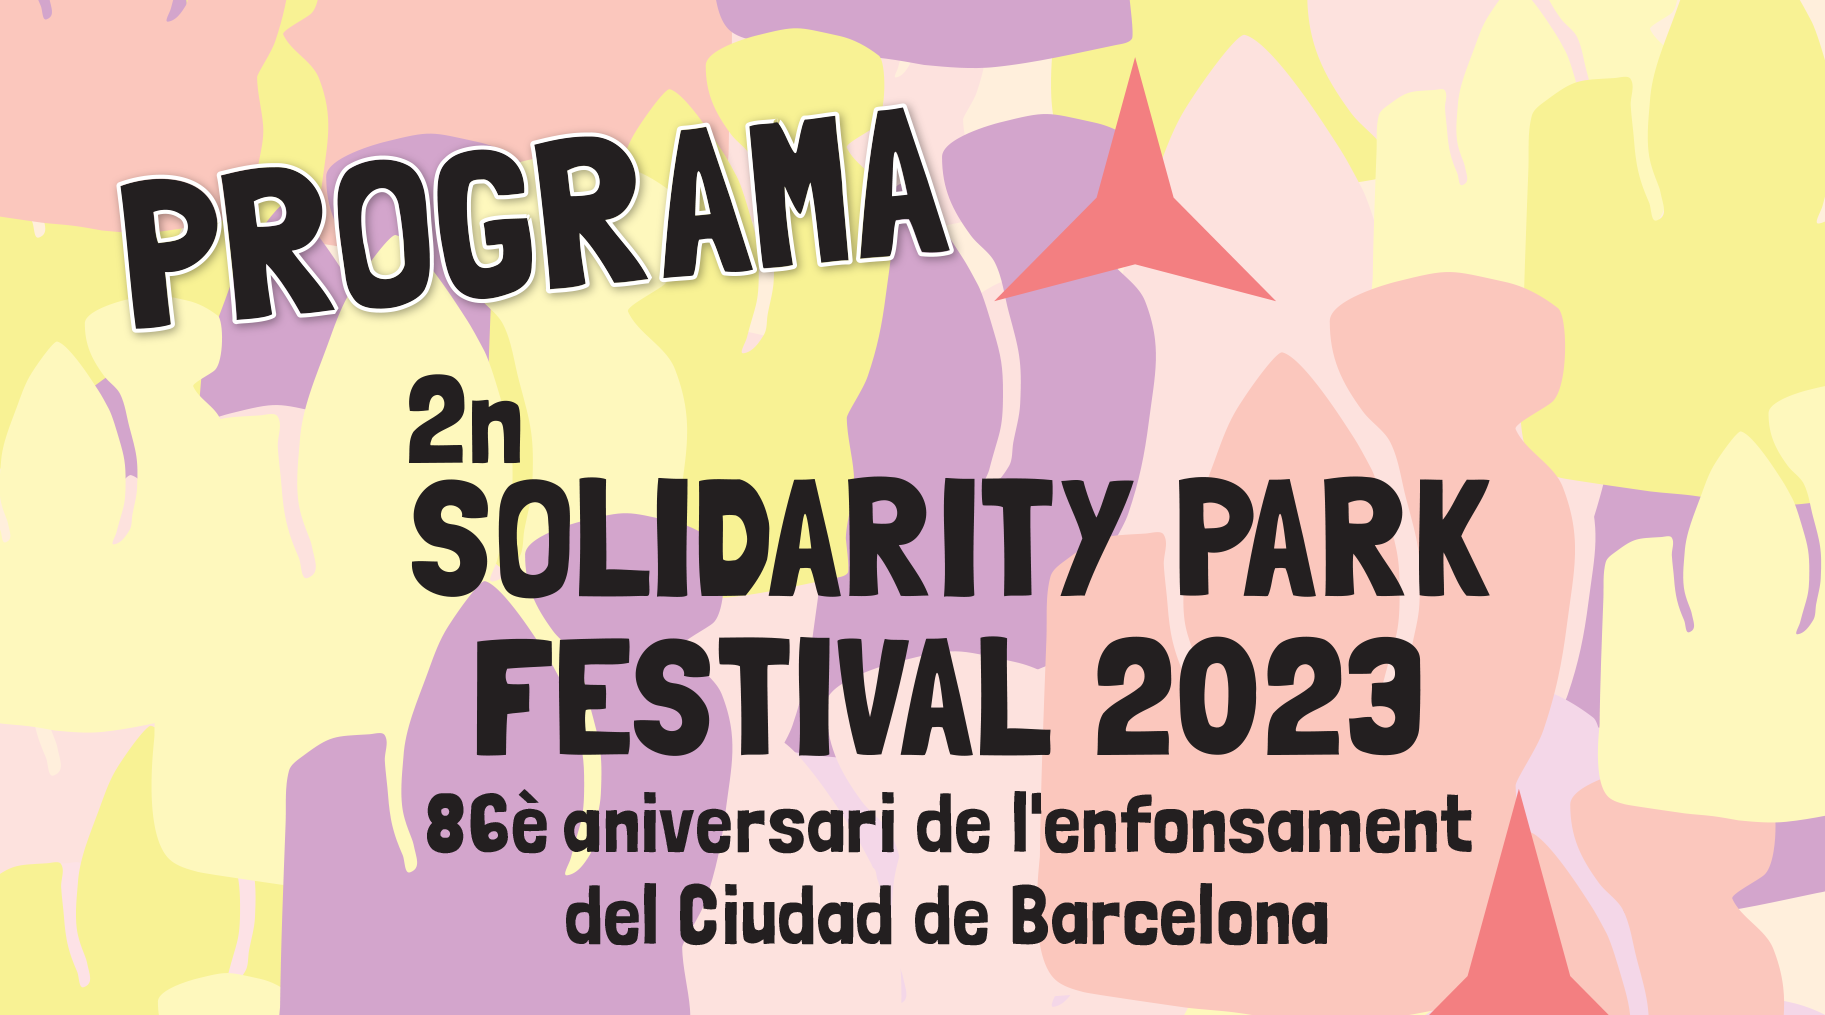 Una inauguració al 'Parc de la Solidaritat' obre avui els actes del 86è aniversari del 'Ciudad de Barcelona' 